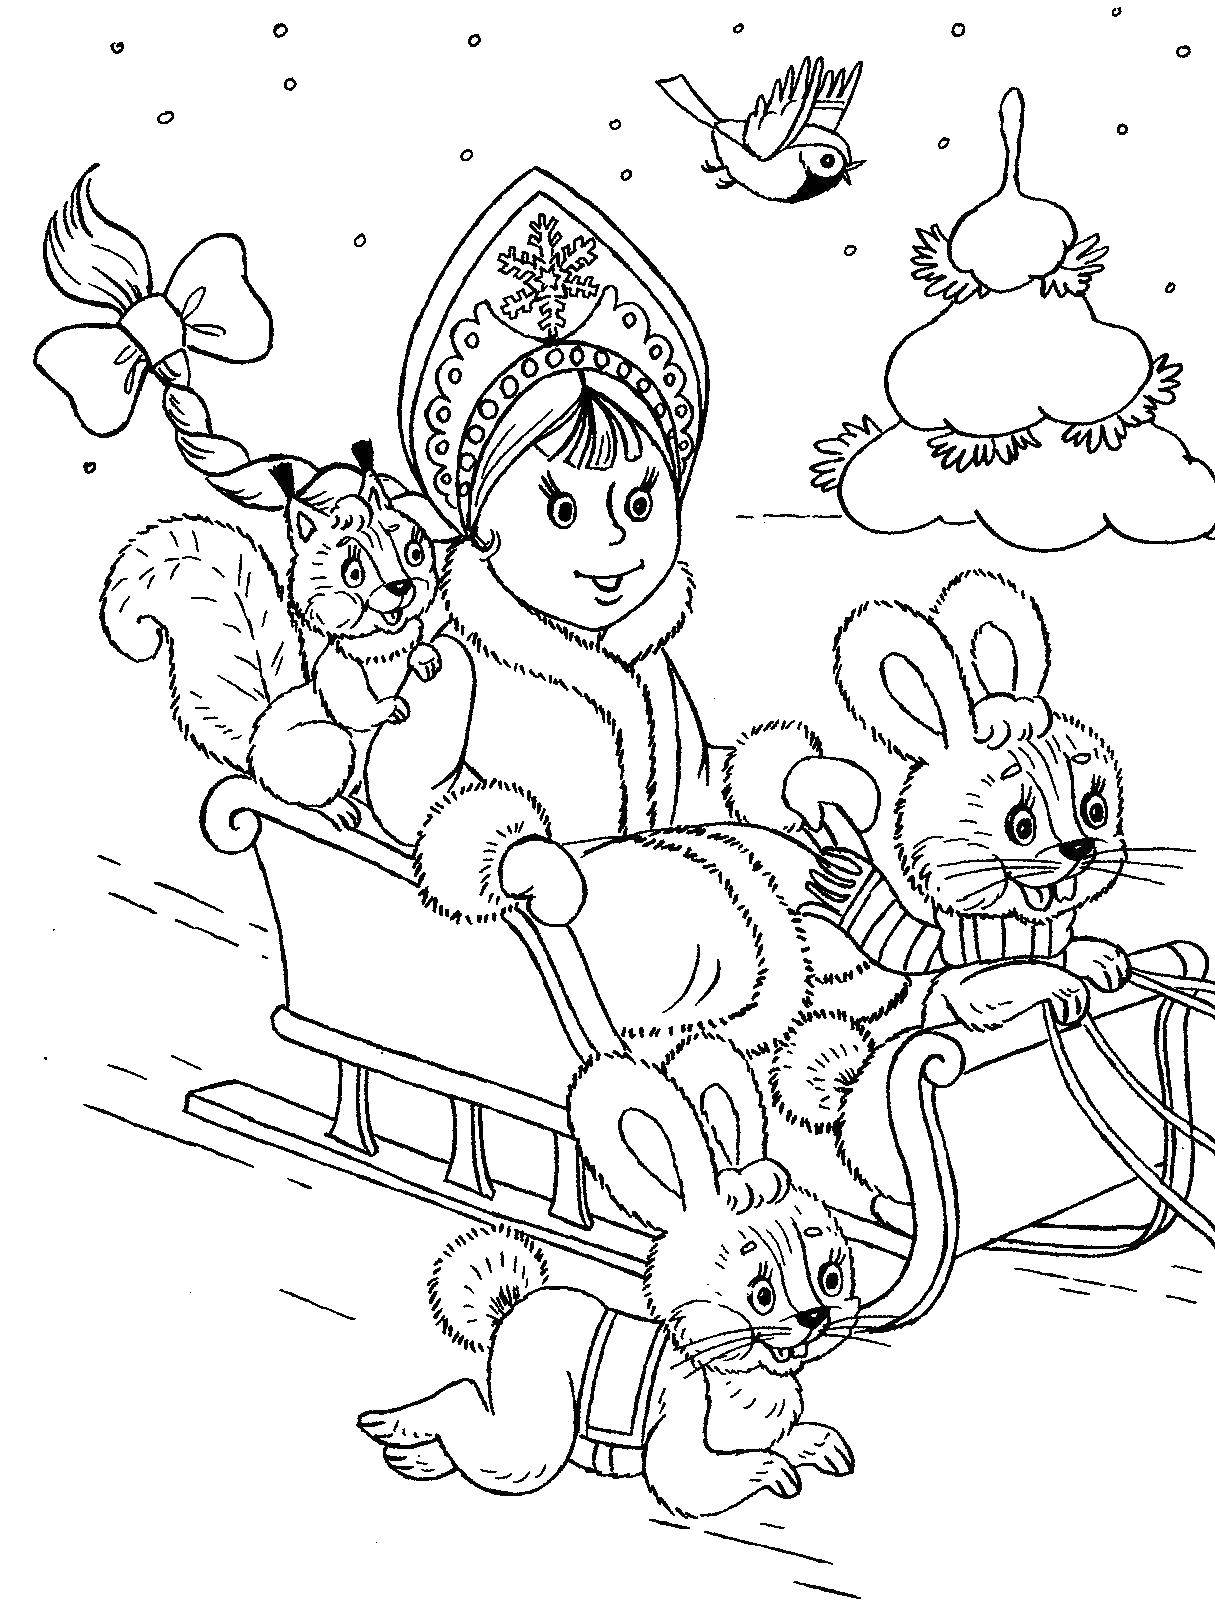 Раскраска со сказочным персонажем Снегурочка в зимней обстановке (снегурочка, зайка)